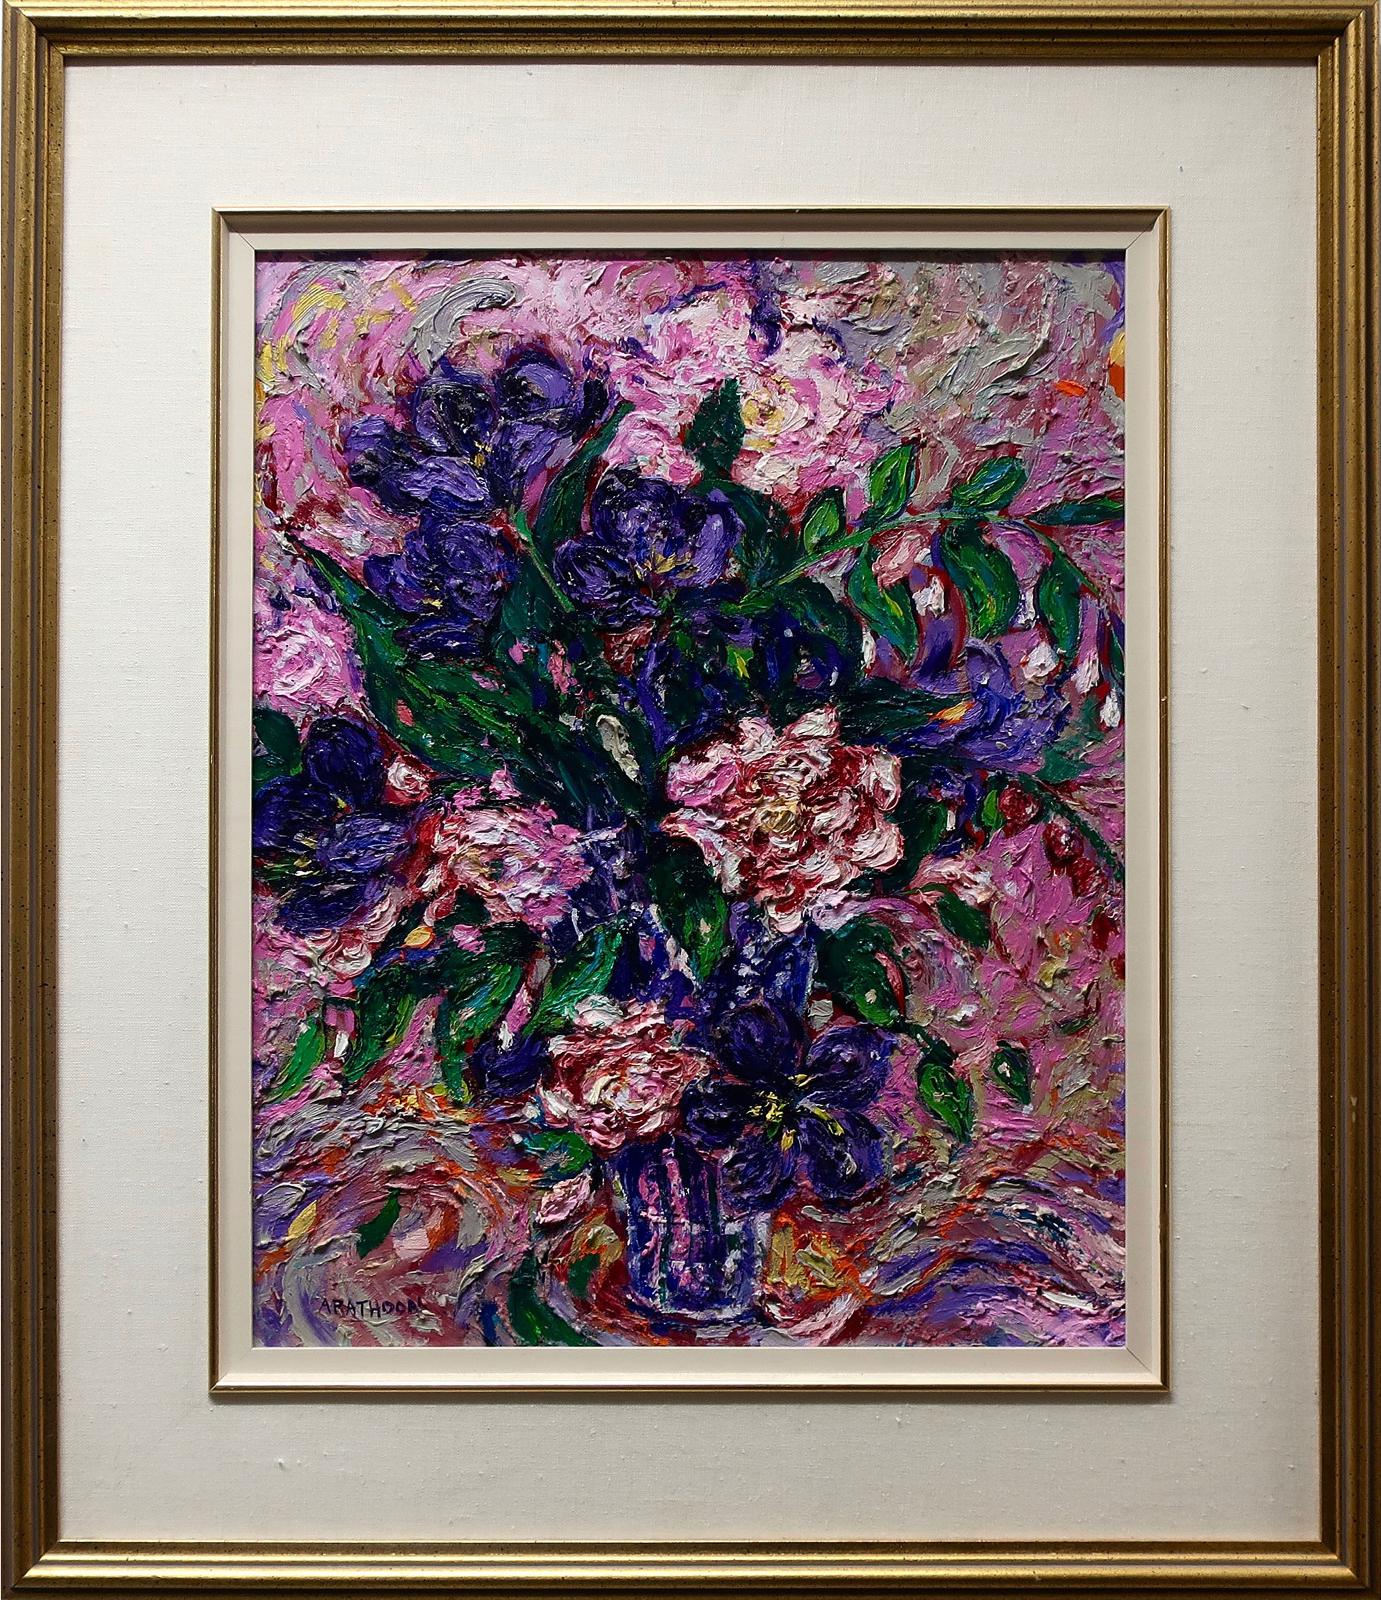 David Arathoon (1959) - Spring Bouquet